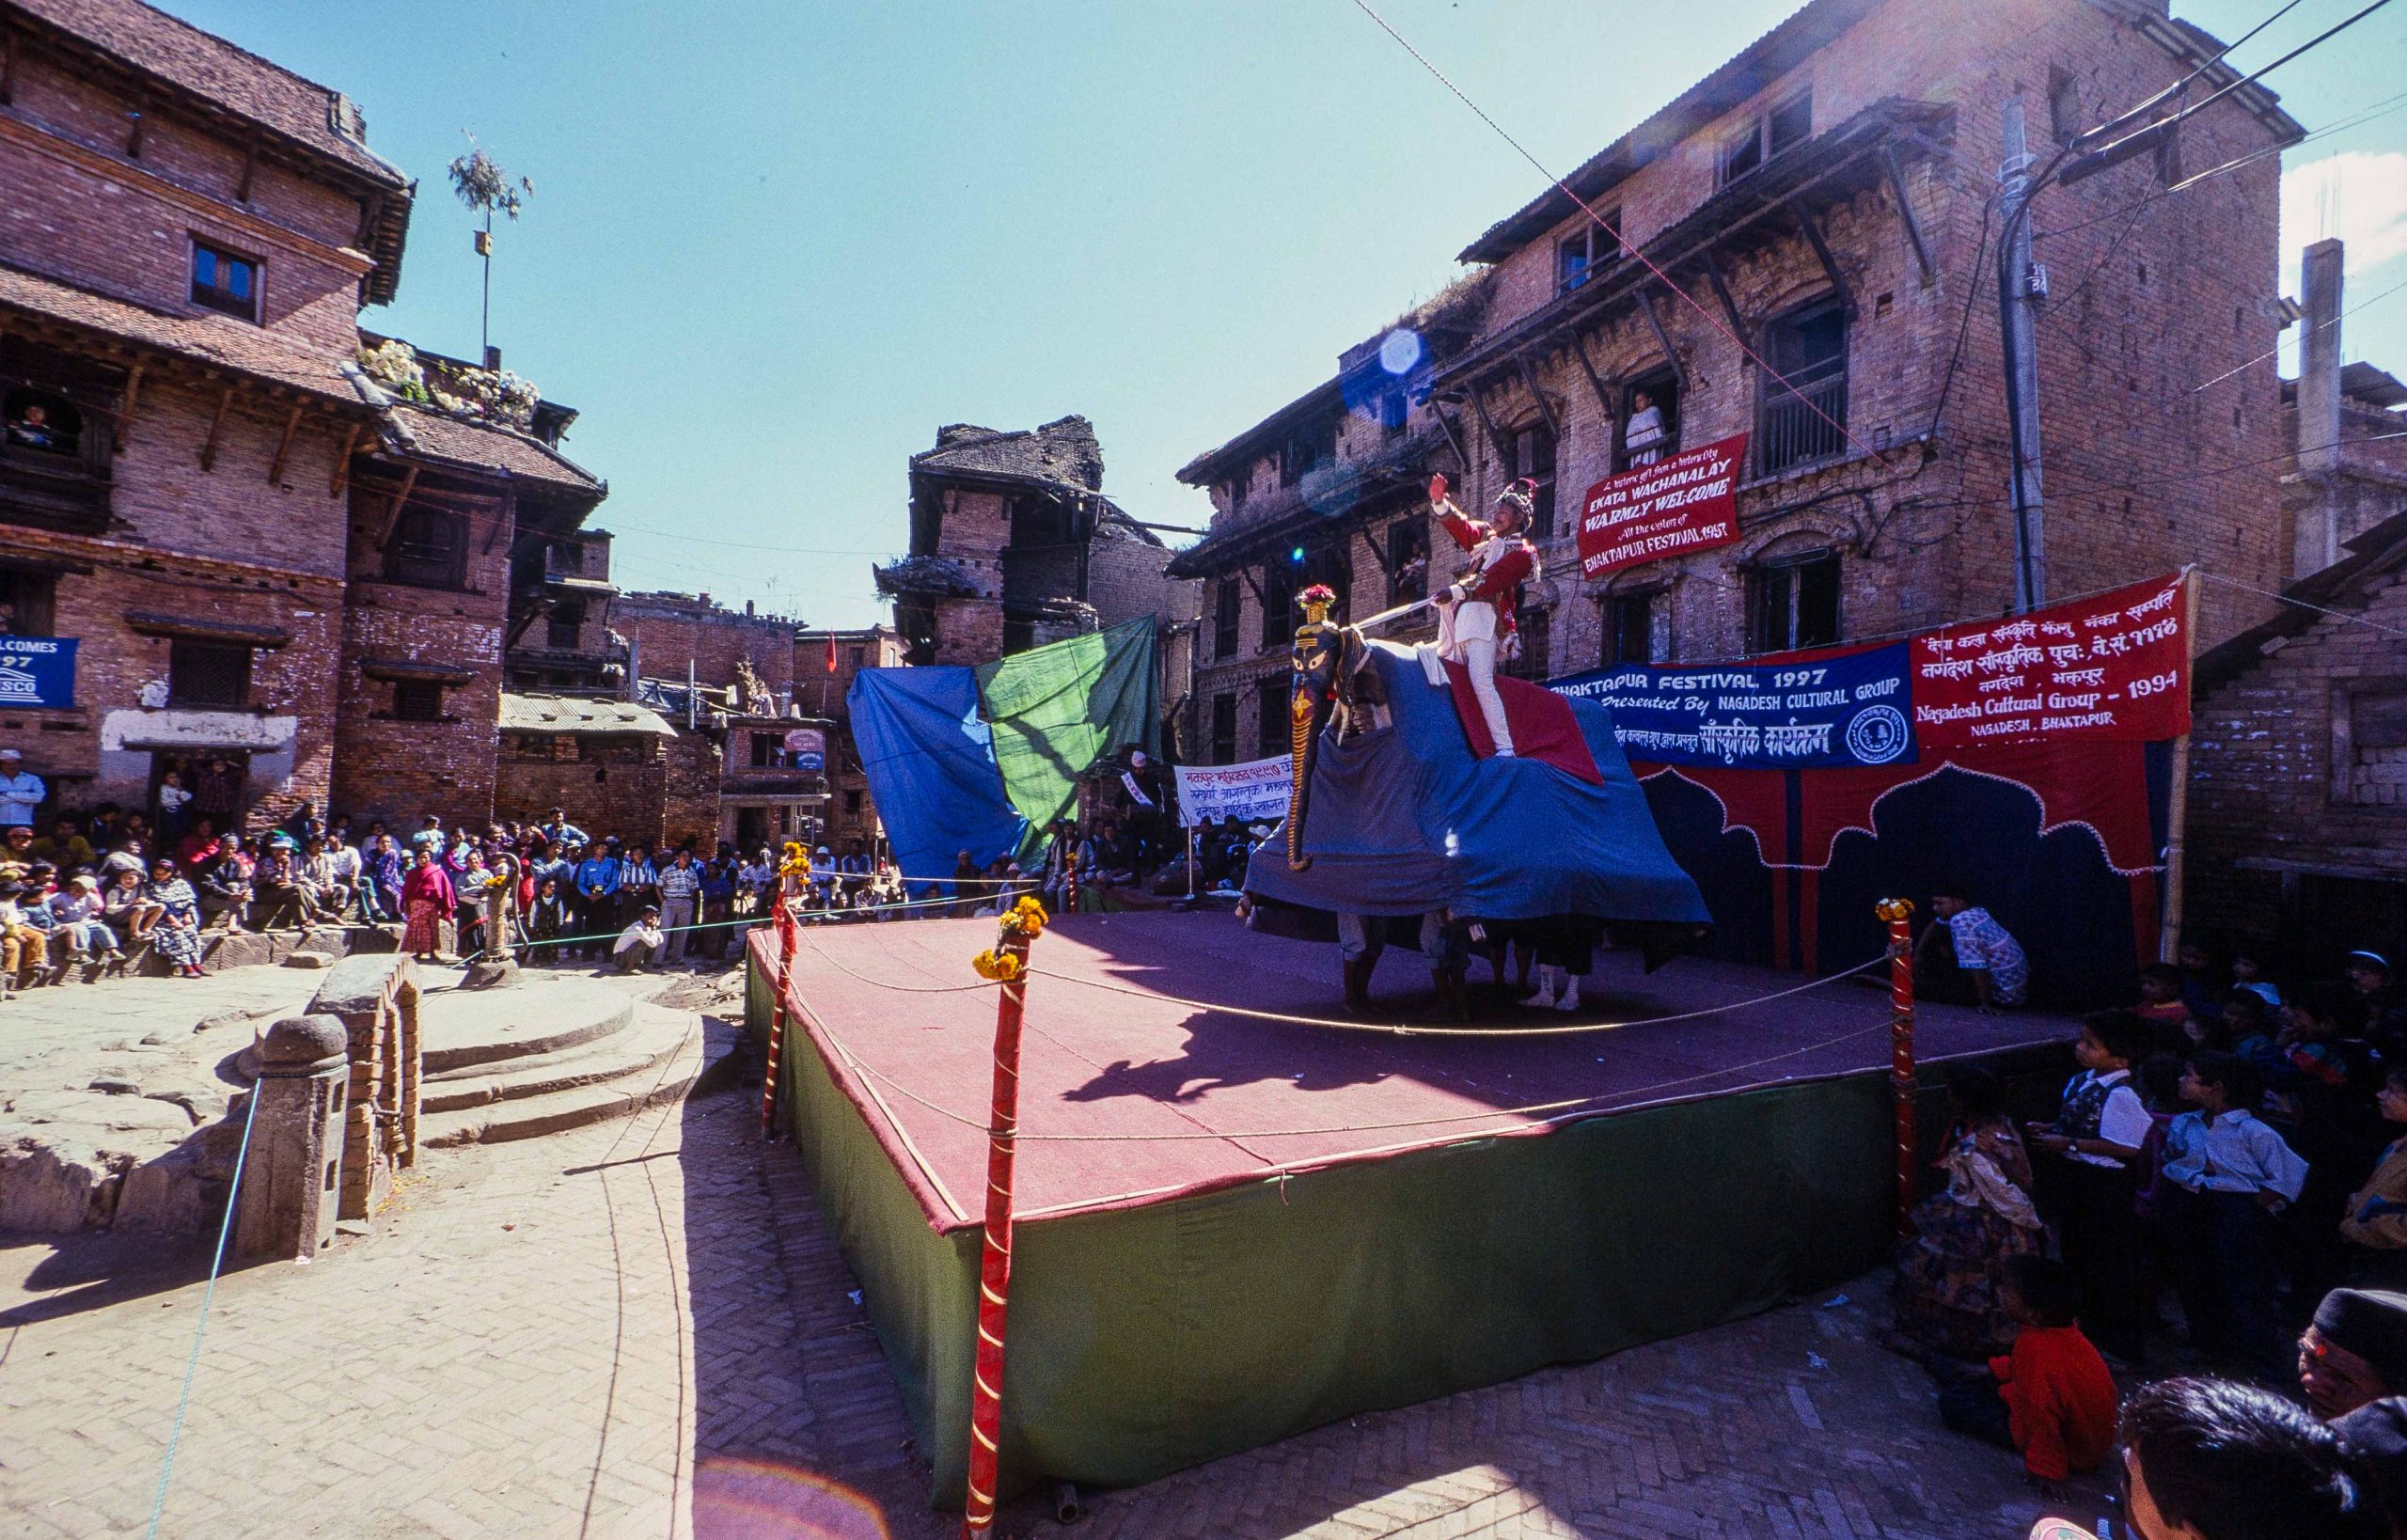 Stage performance during Bhaktapur Festival 1997 Bhaktapur image